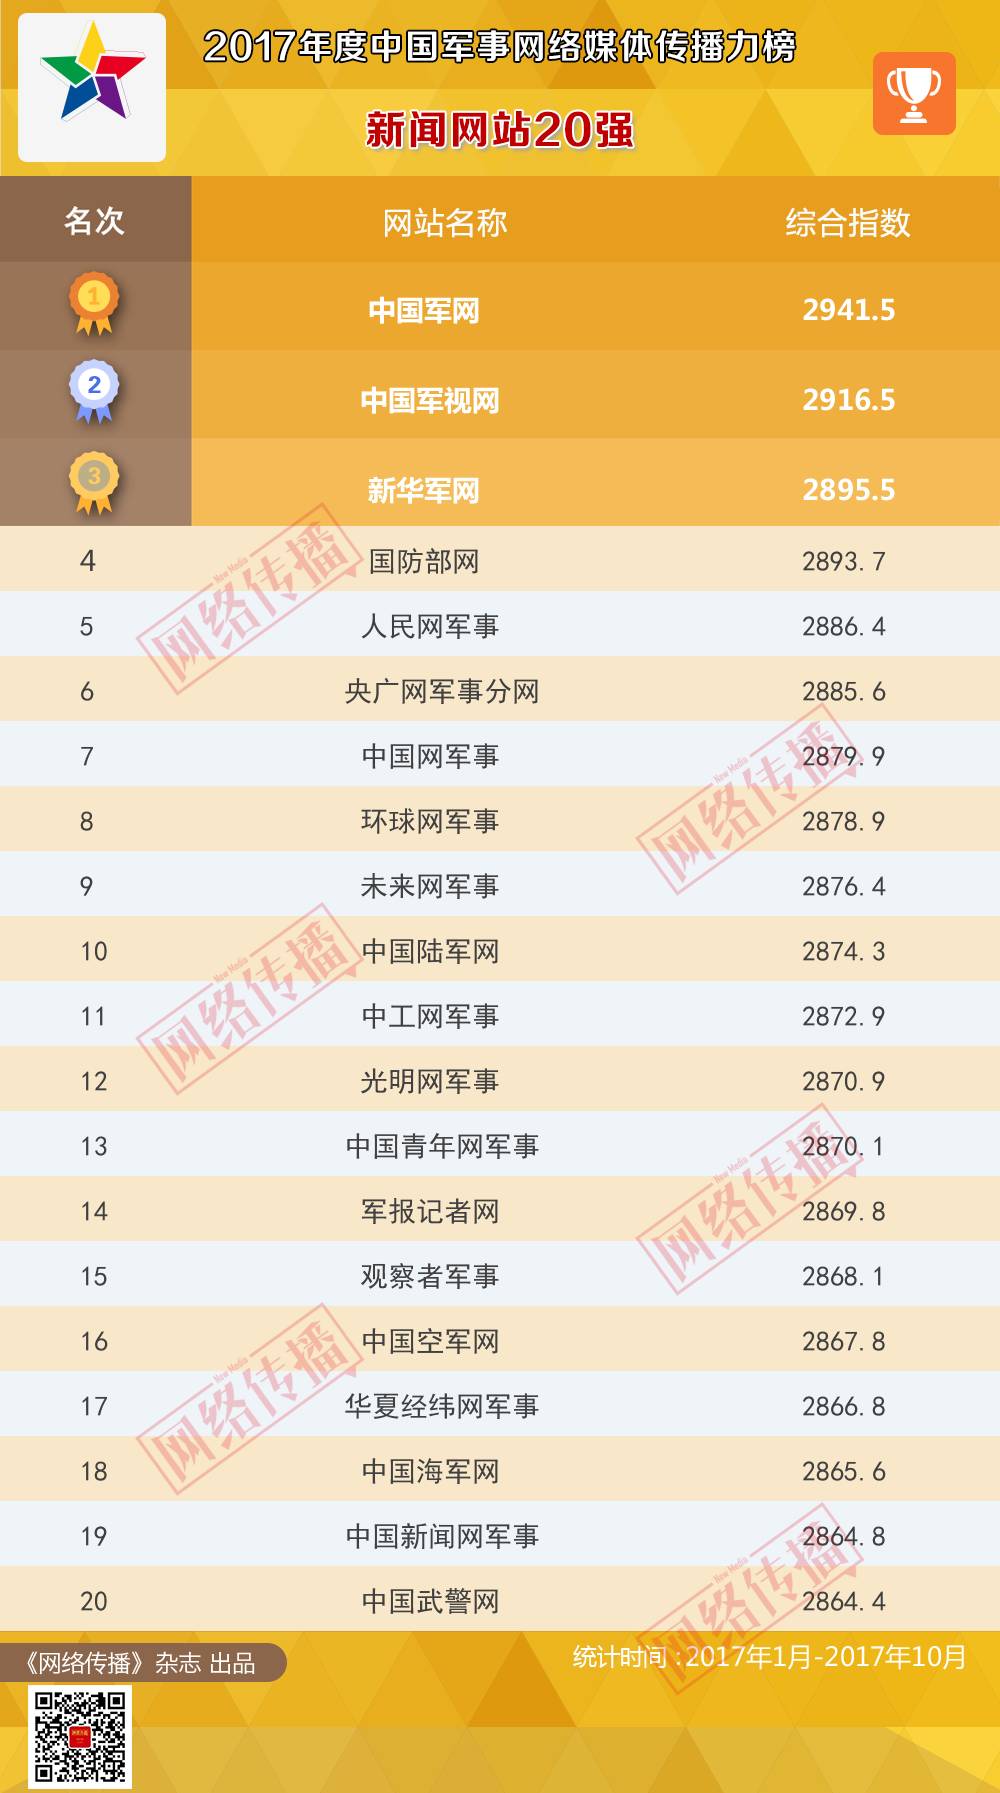 光明网军事荣获2017年度中国军事网络媒体（新闻网站）传播力榜20强